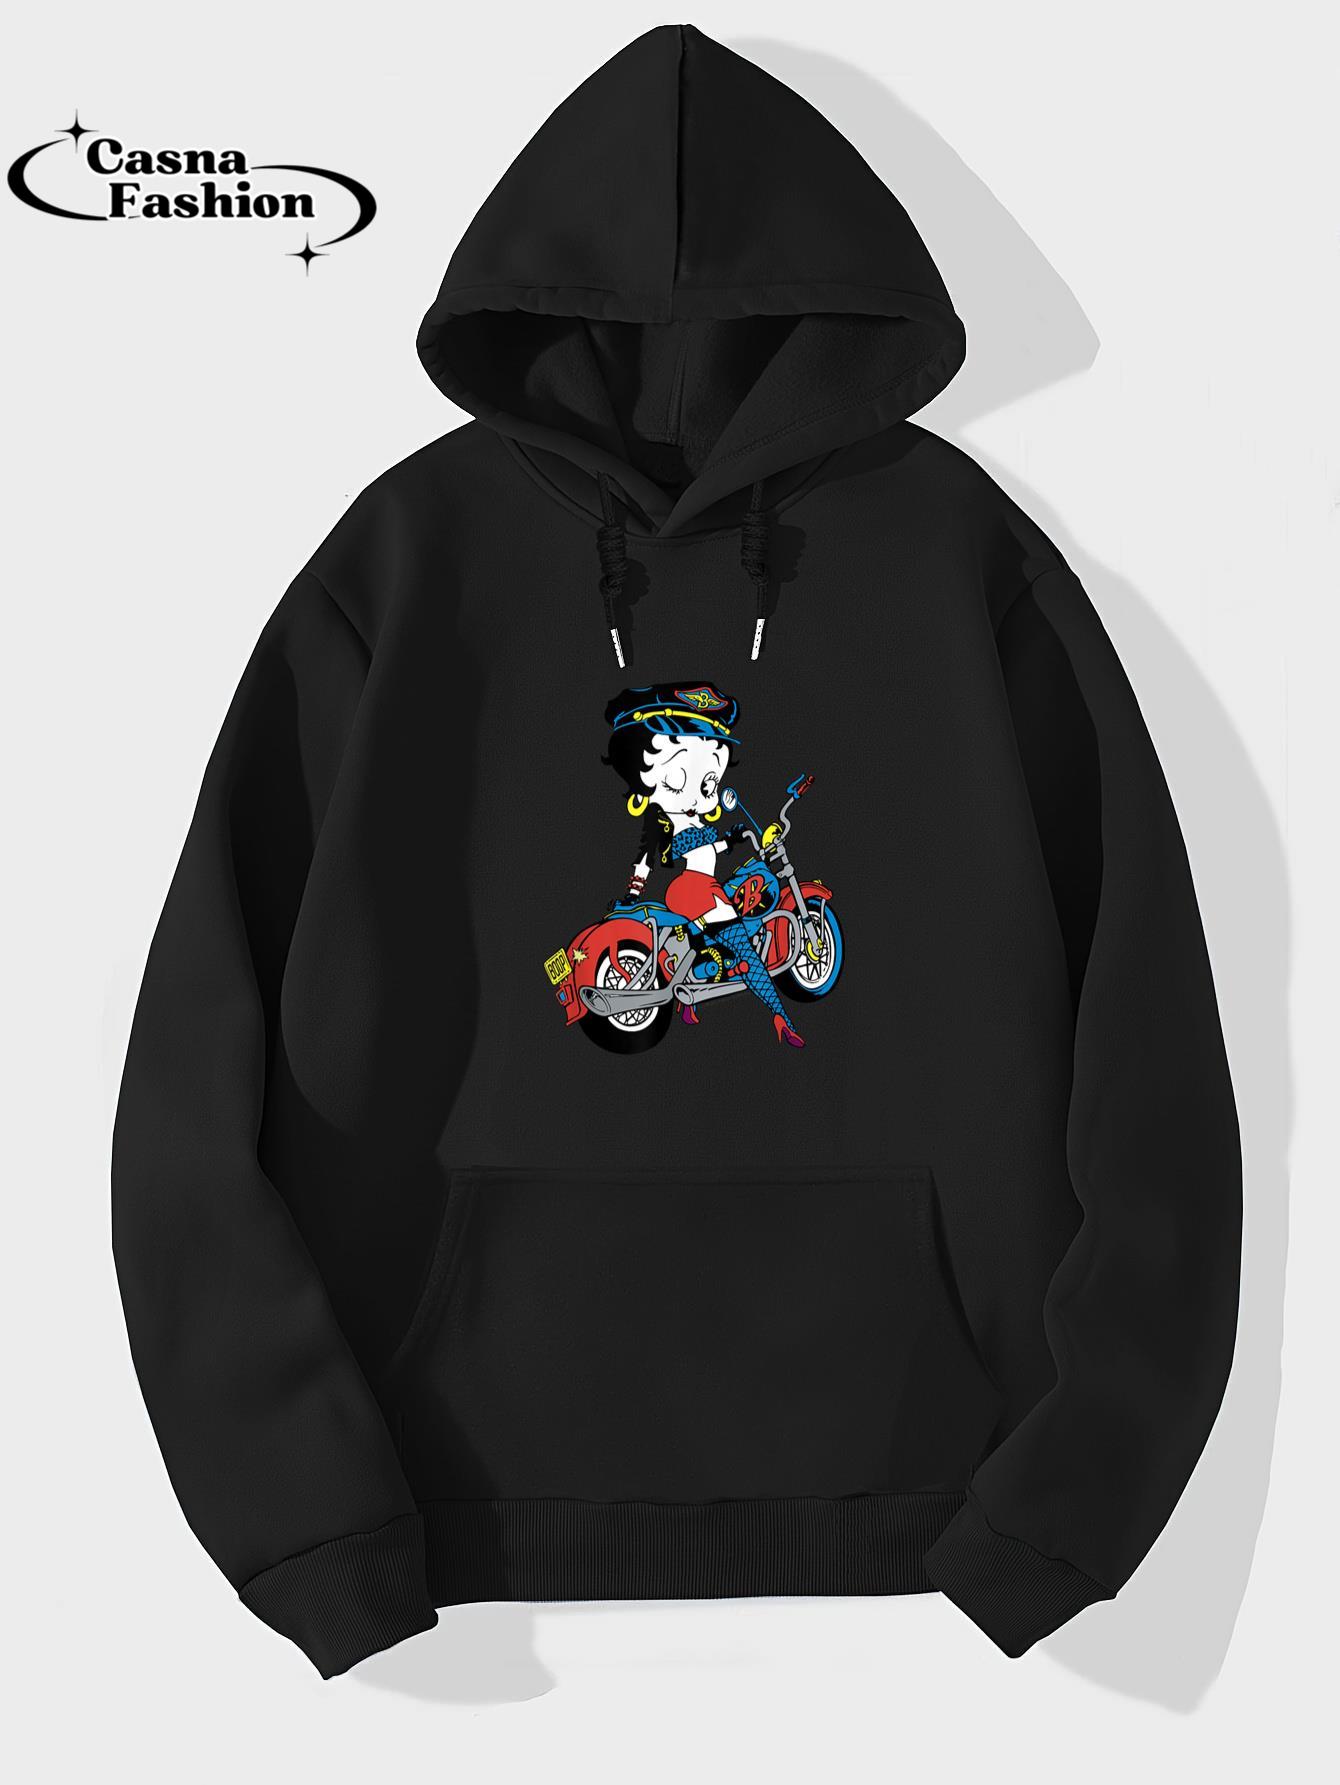 casnafashion_Hoodie_Betty Boop Vintage Biker Babe Color Pop Motorcycle Portrait T-Shirt_hoodie_black hoodie